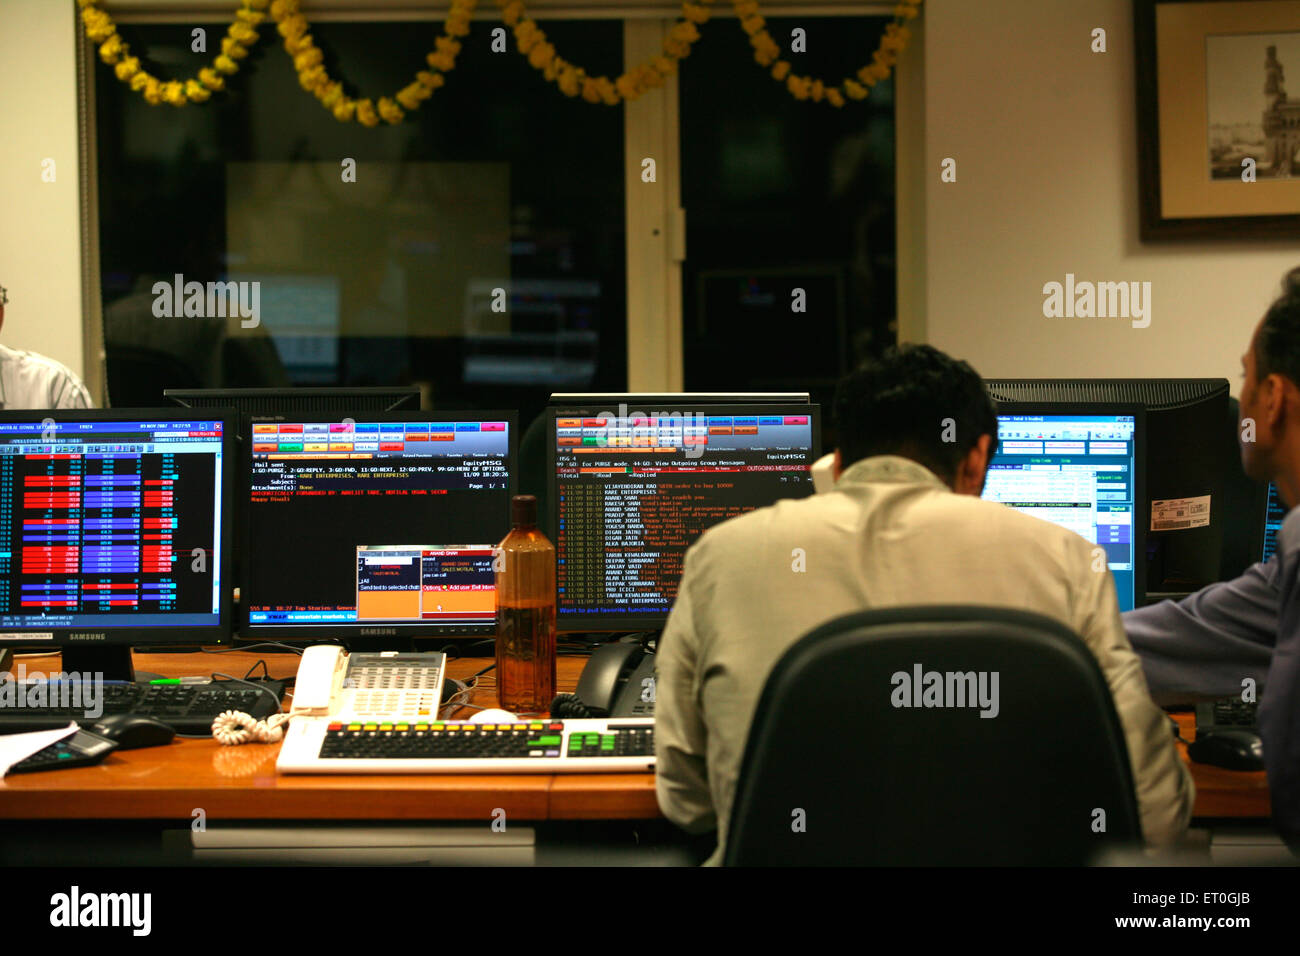 Börsenmakler tun muhurat Handel Kennzeichnung Anfang des neuen Geschäftsjahres nach Lakshmi Puja in Makler Büro Bombay Mumbai Indien durchgeführt. Stockfoto